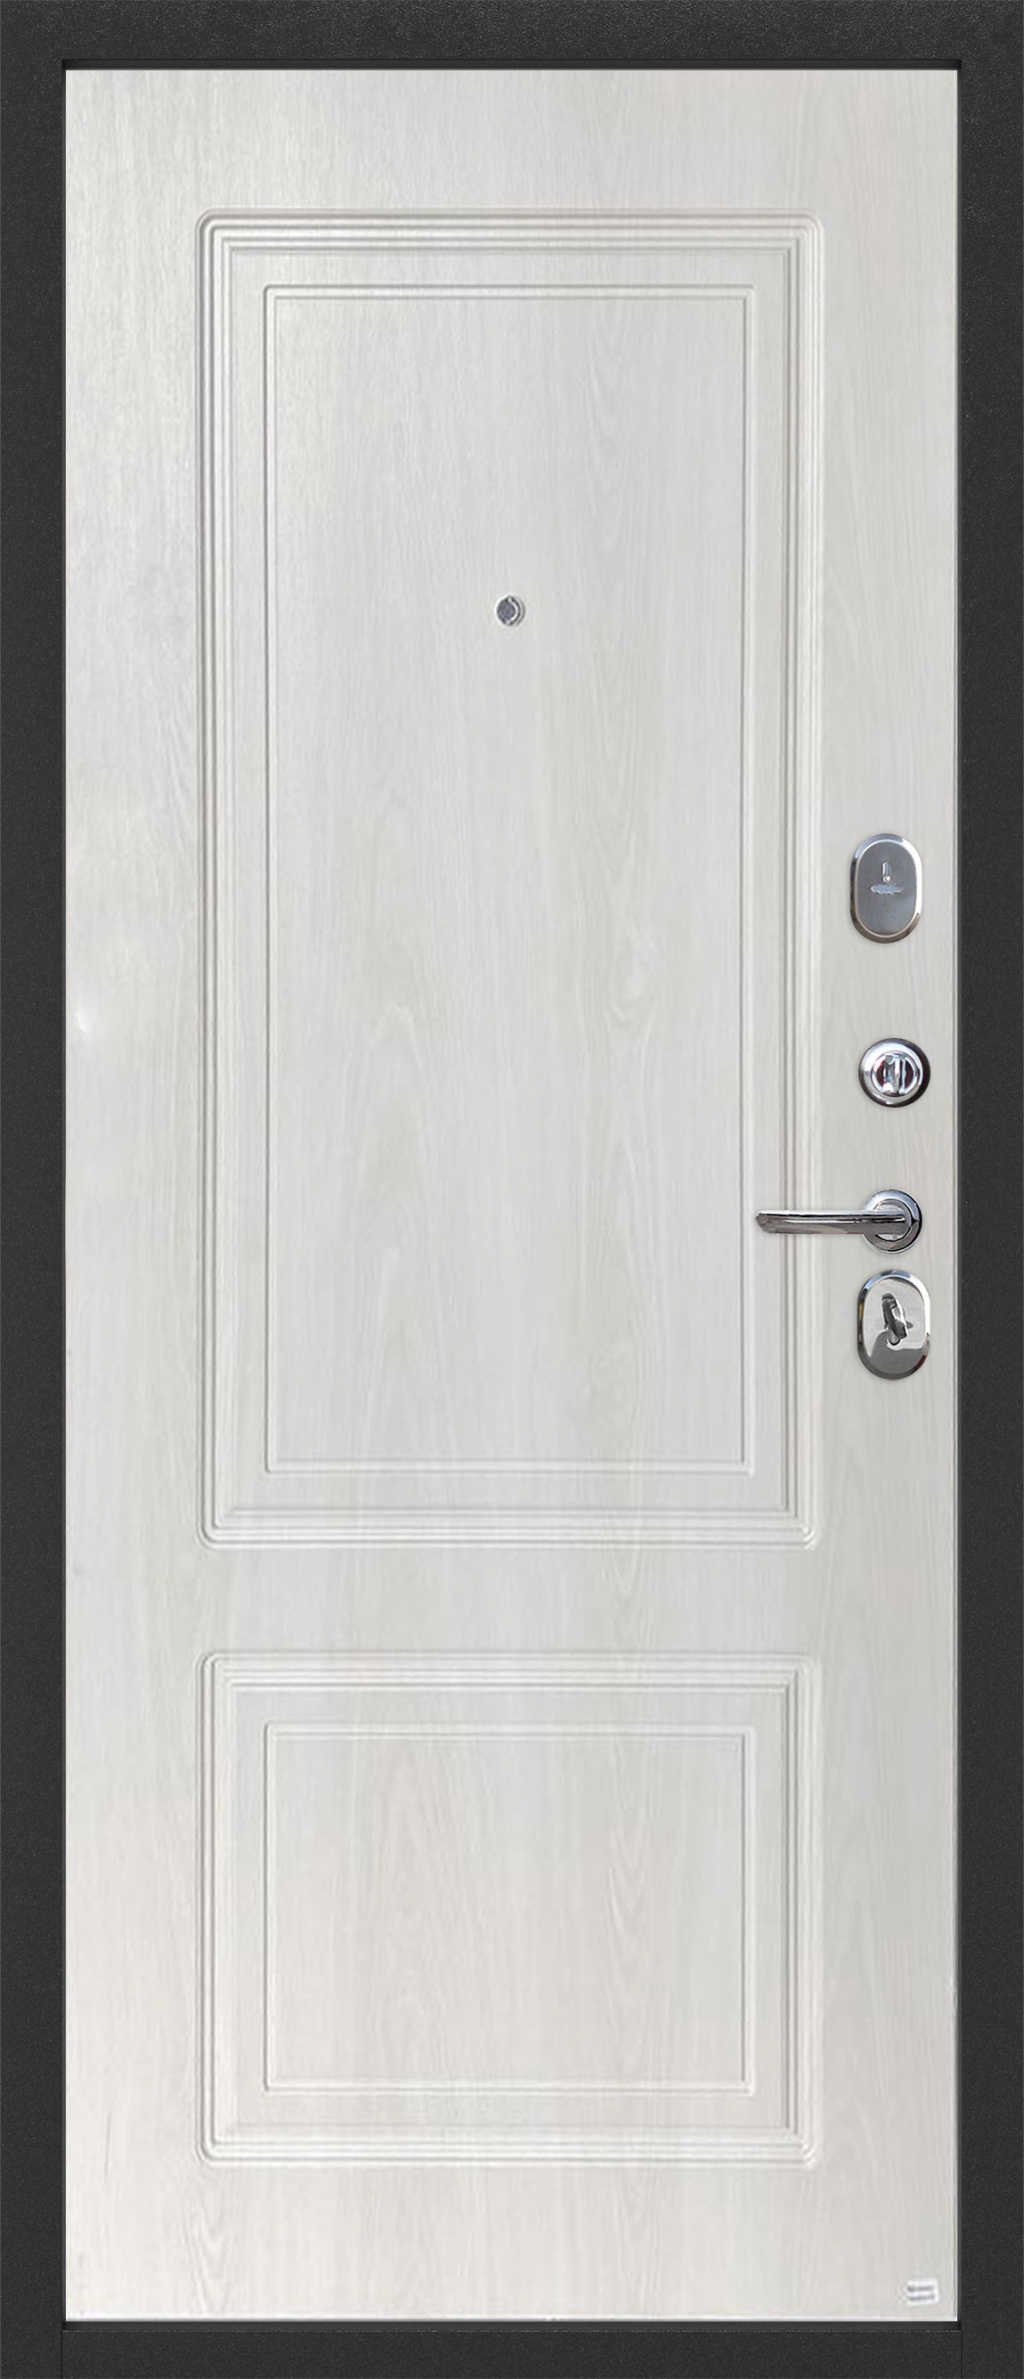 Феррони Входная дверь 10 см Статус Серебро, арт. 0005413 - фото №1